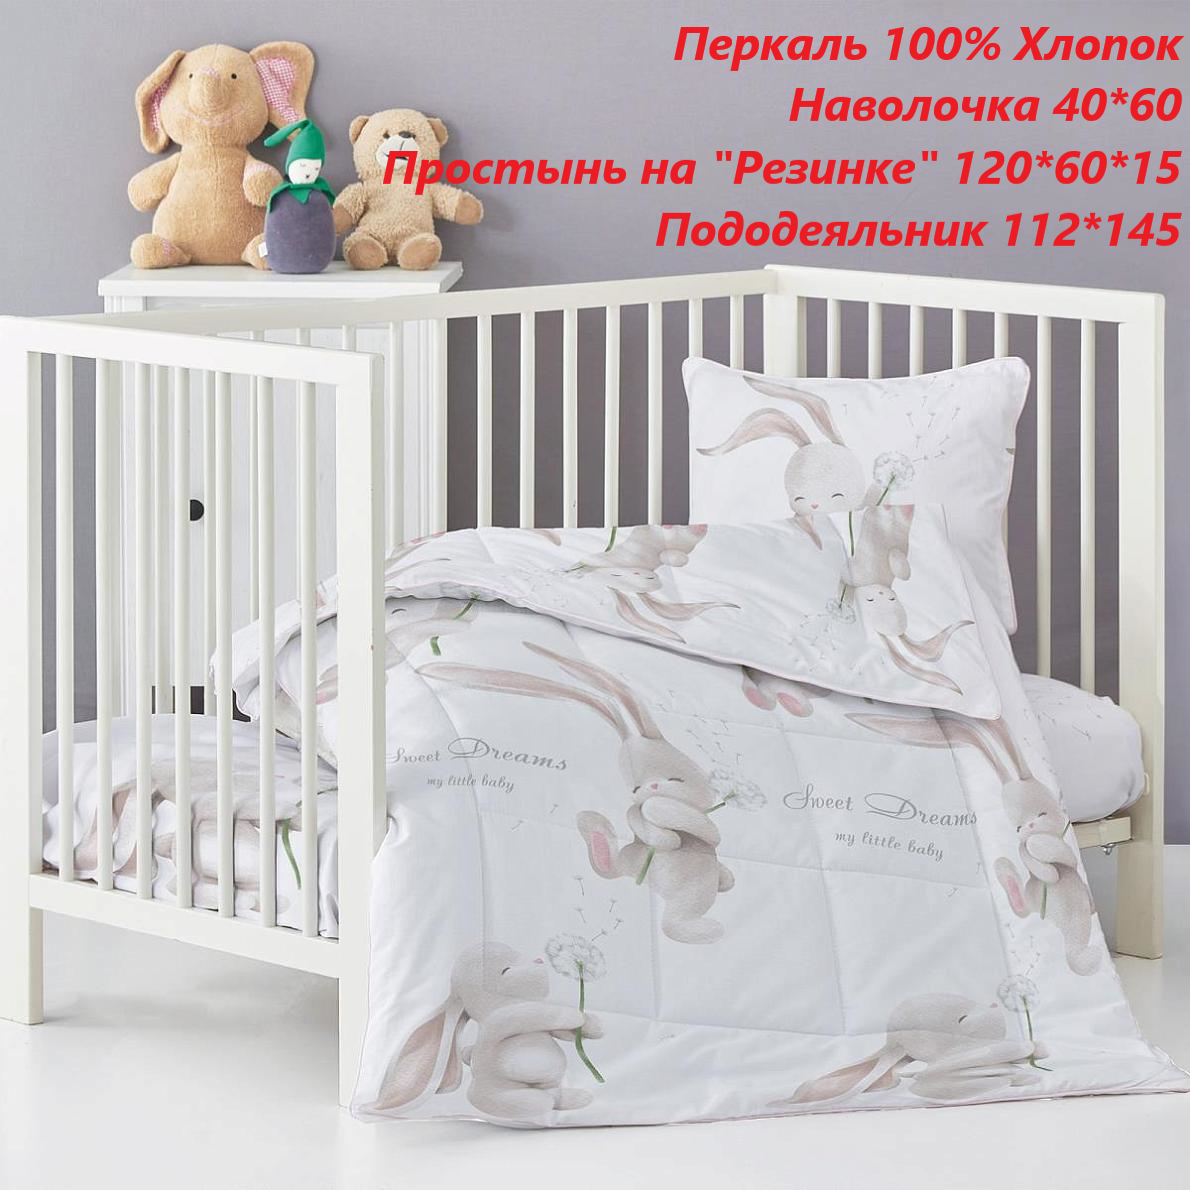 Детское постельное белье на резинке 120 х 60